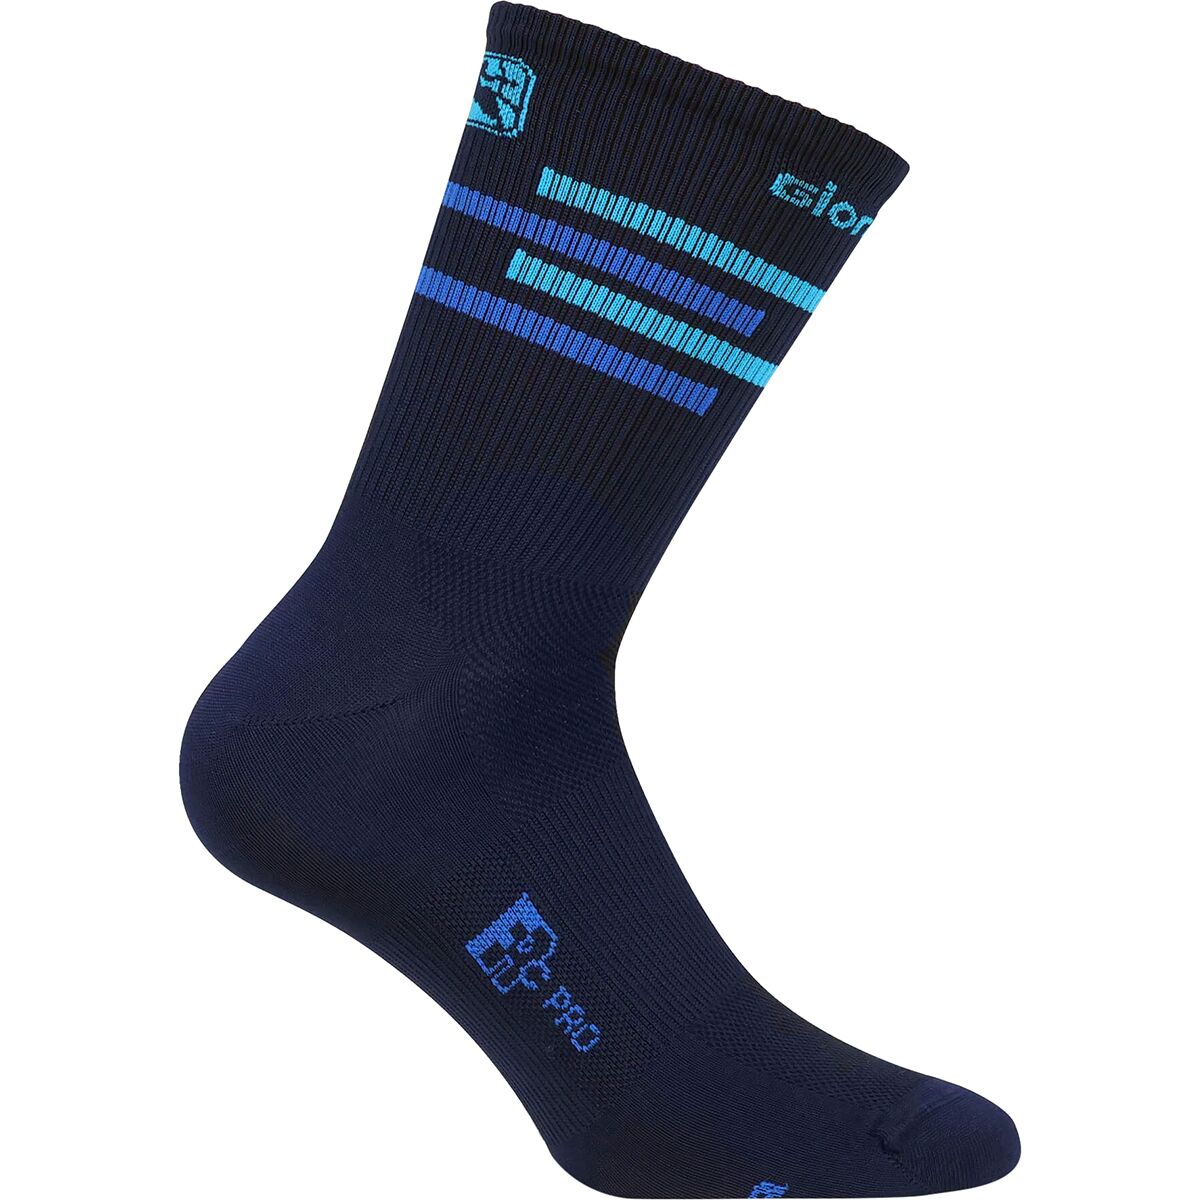 Giordana FR-C Tall Cuff Socks Midnight Blue/Light Blue, M/41-44 - Men's